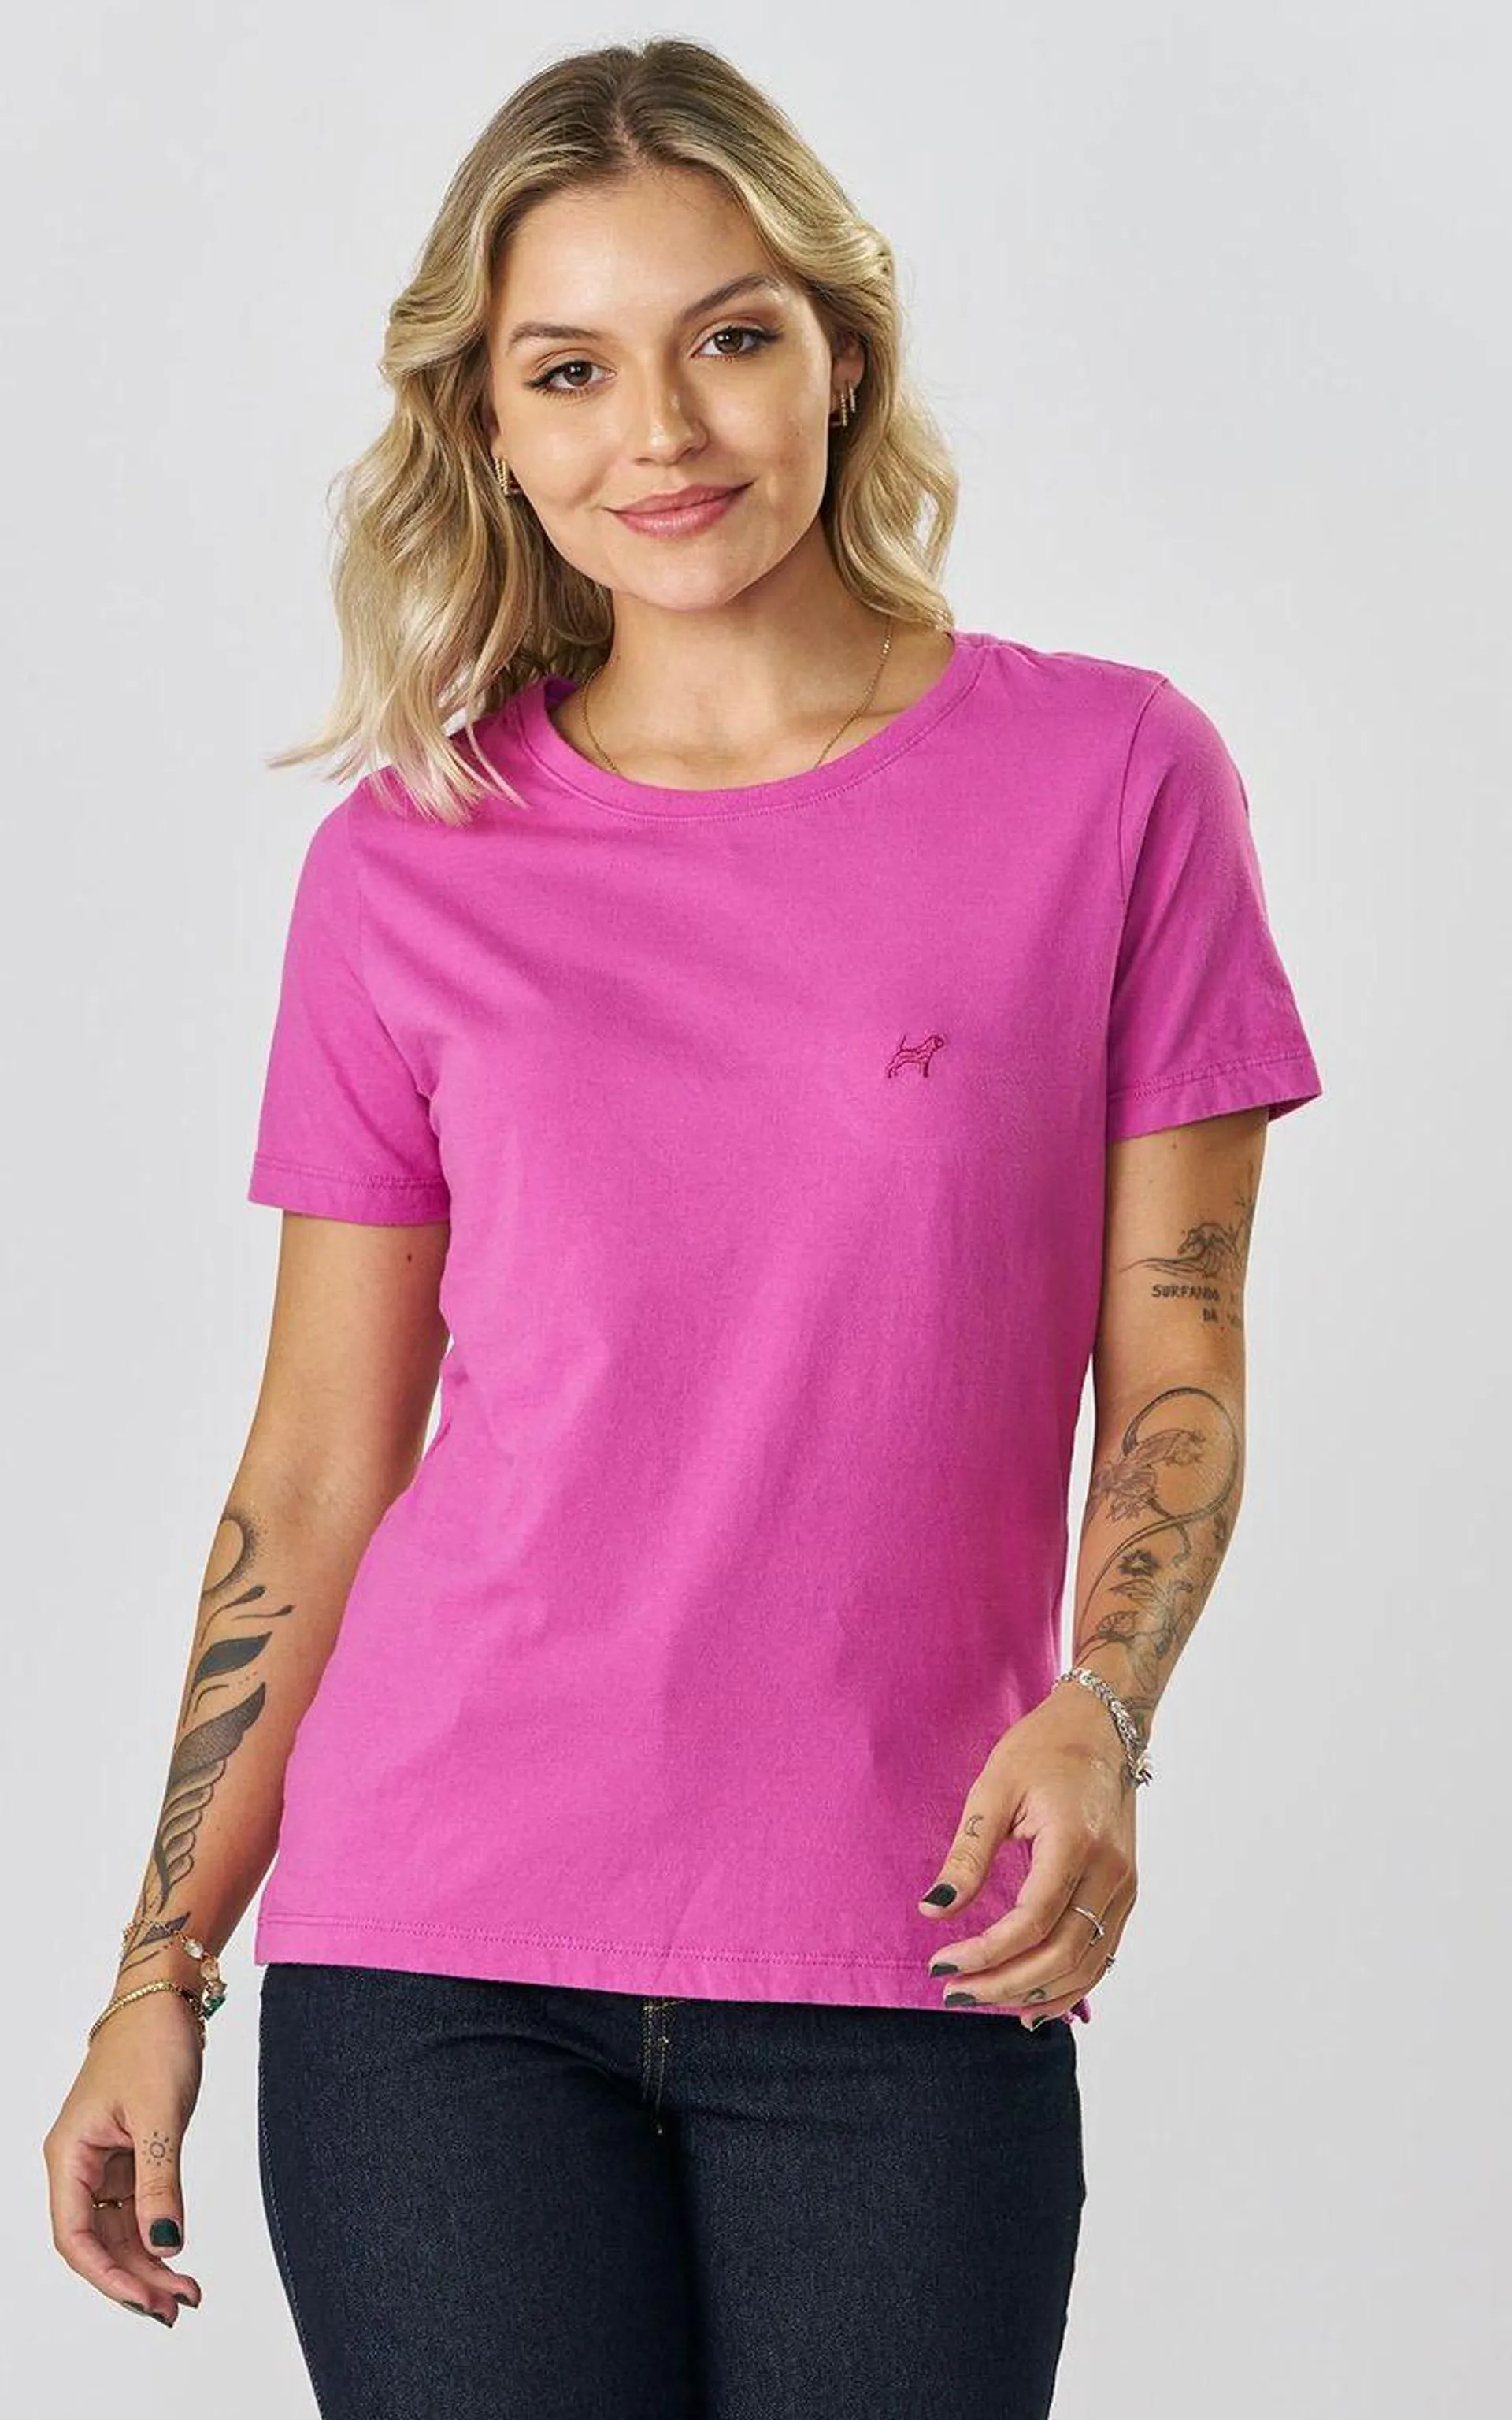 Camiseta Feminina Colors - FESTA